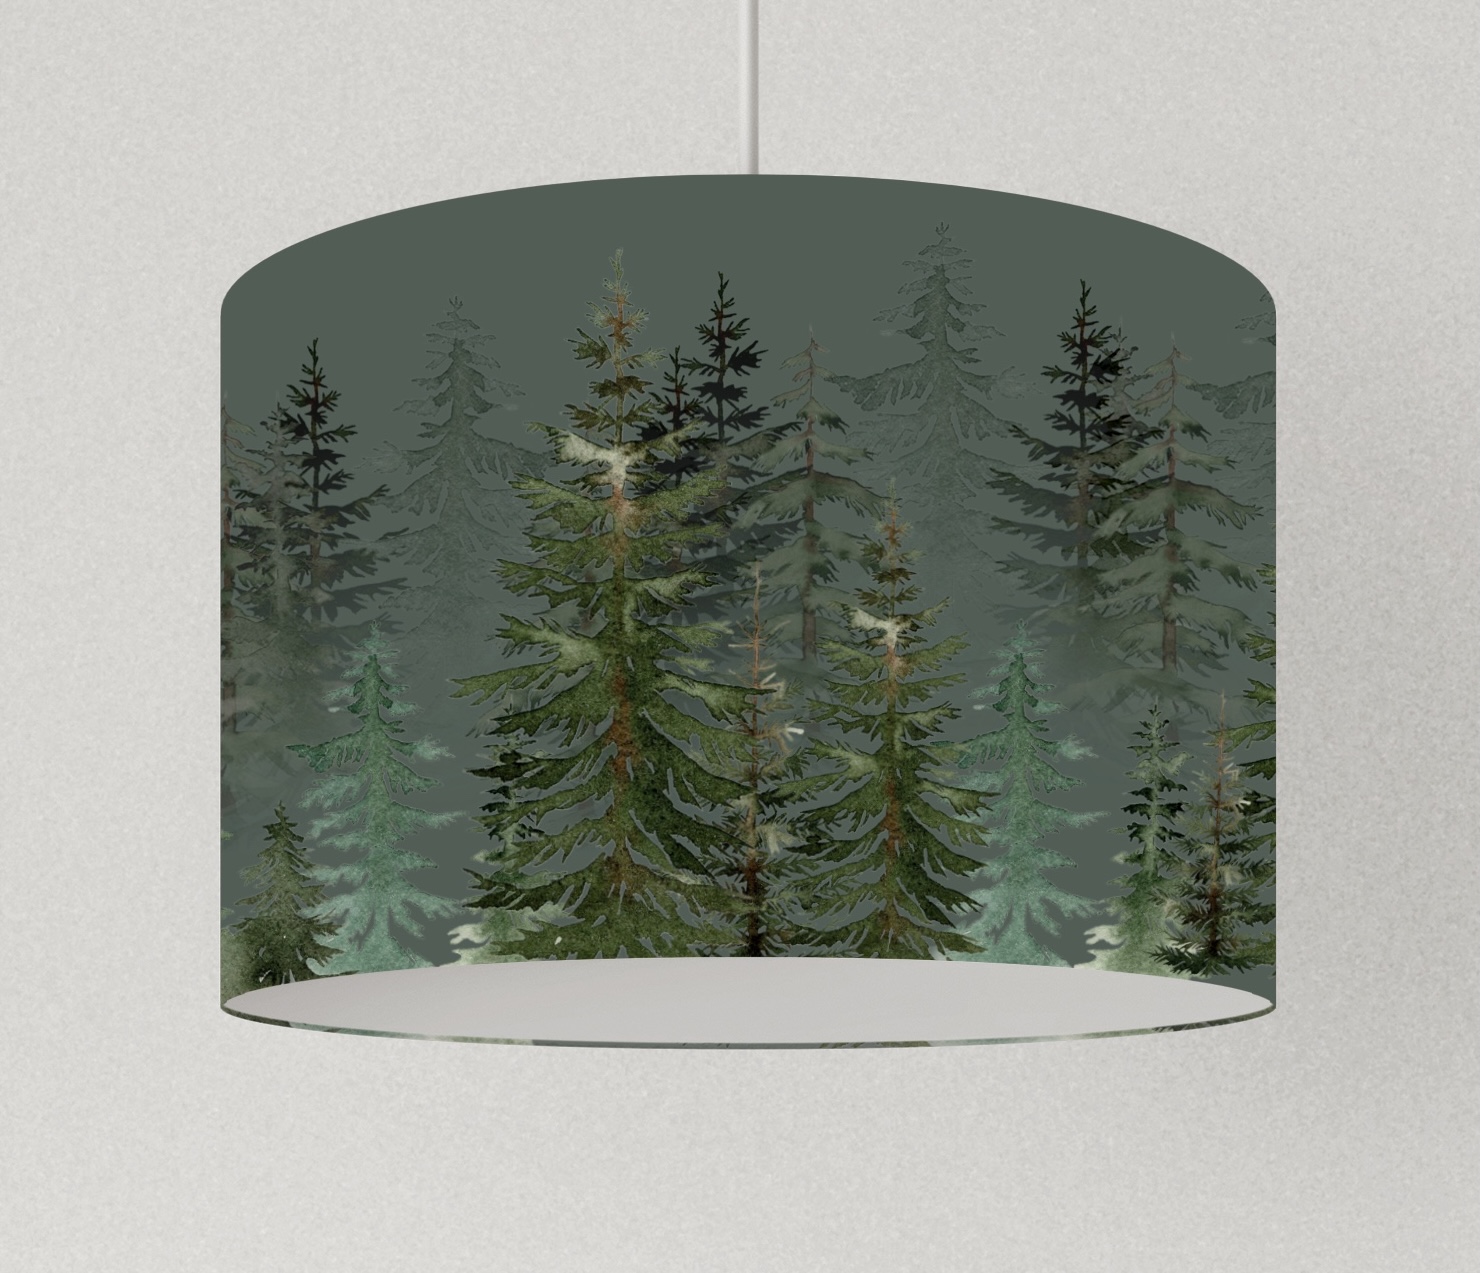 Lampe Wohnzimmer Wald , Lampenschirm grün, Hängelampe Küche, Tischlampe grün Bäume